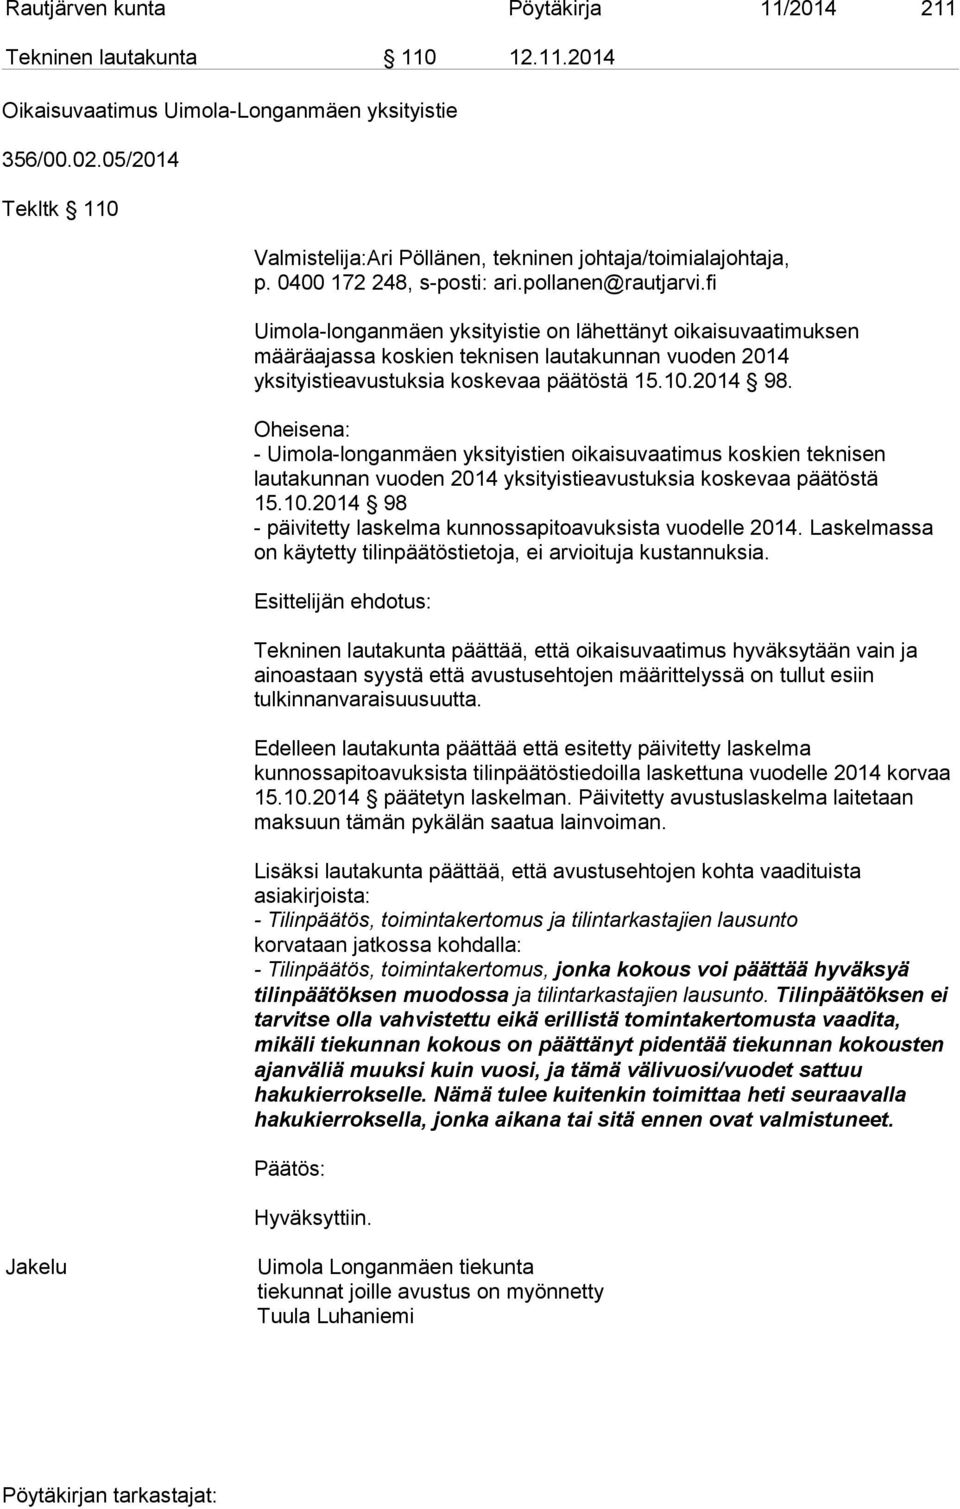 yksityistieavustuksia koskevaa päätöstä 15.10.2014 98. Oheisena: - Uimola-longanmäen yksityistien oikaisuvaatimus koskien teknisen lautakunnan vuoden 2014 yksityistieavustuksia koskevaa päätöstä 15.